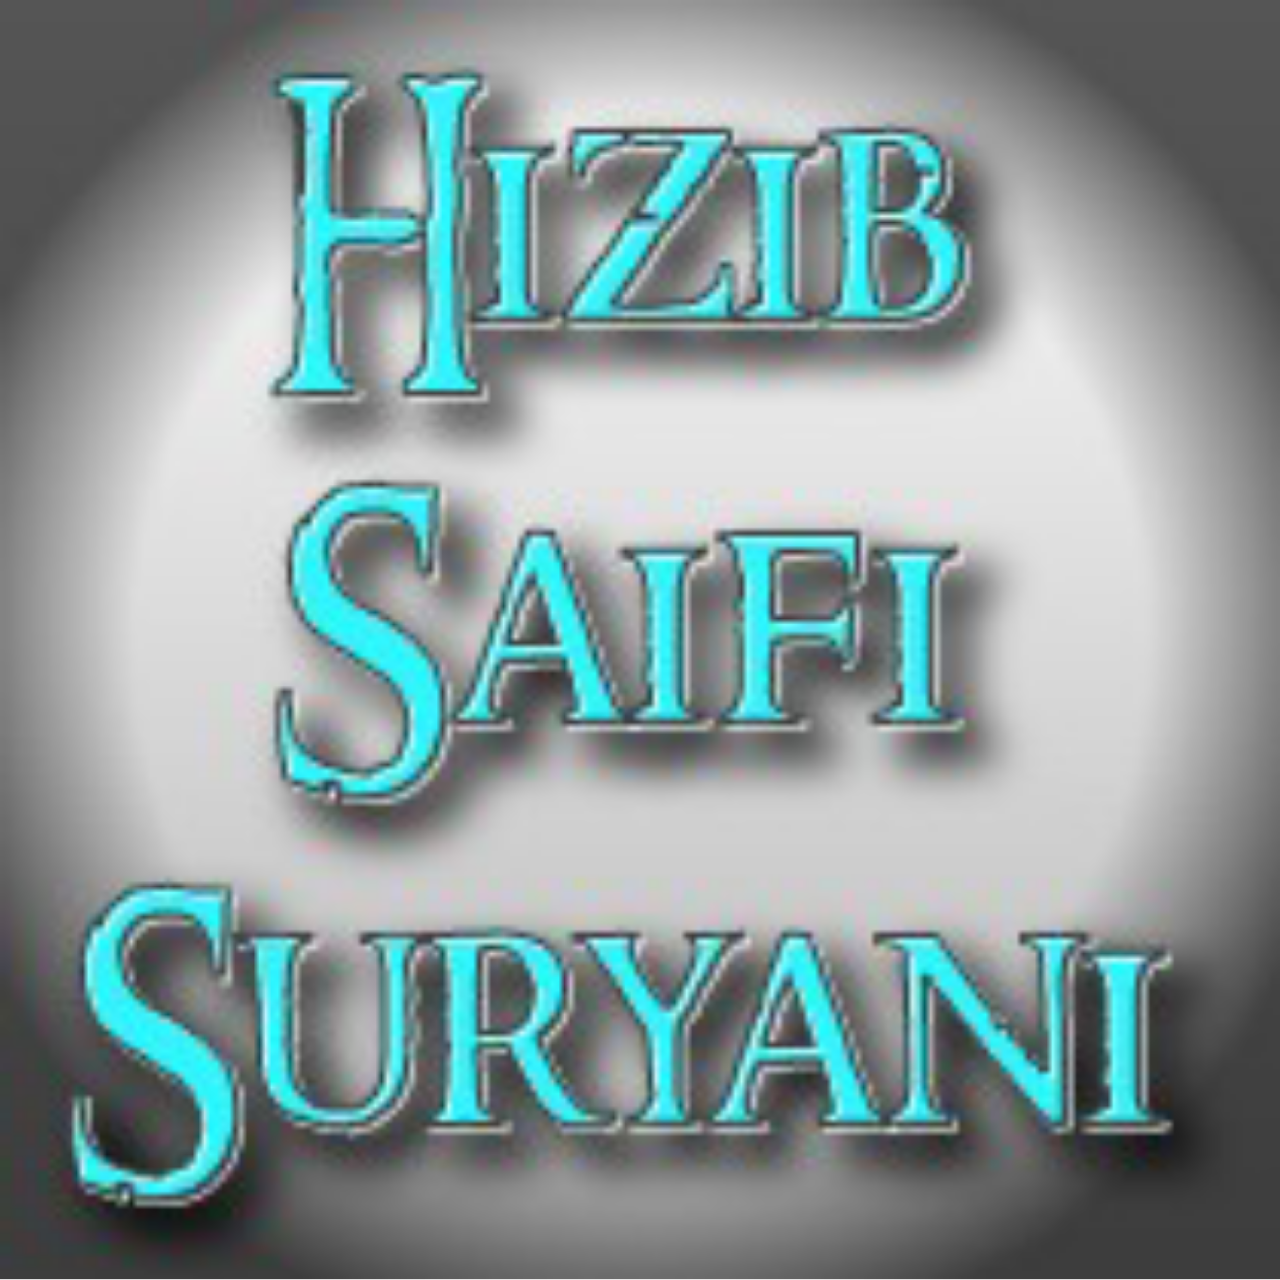 Hizib saifi Suryani, di amalkan untuk tujuan tertentu